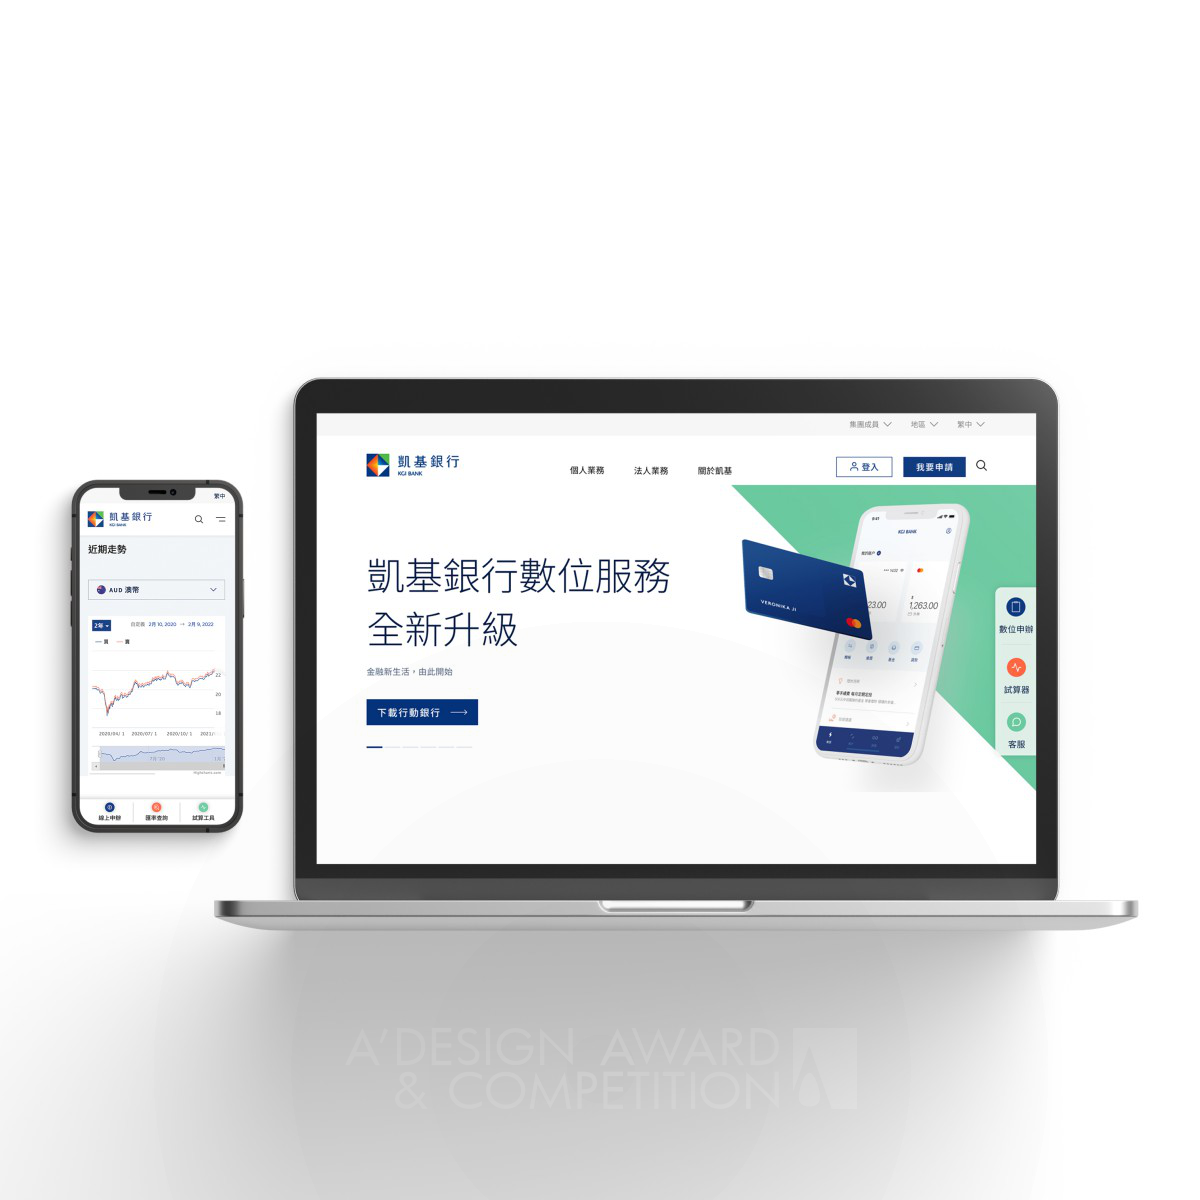 KGI Bank: Rediseño del sitio web que conecta con los clientes